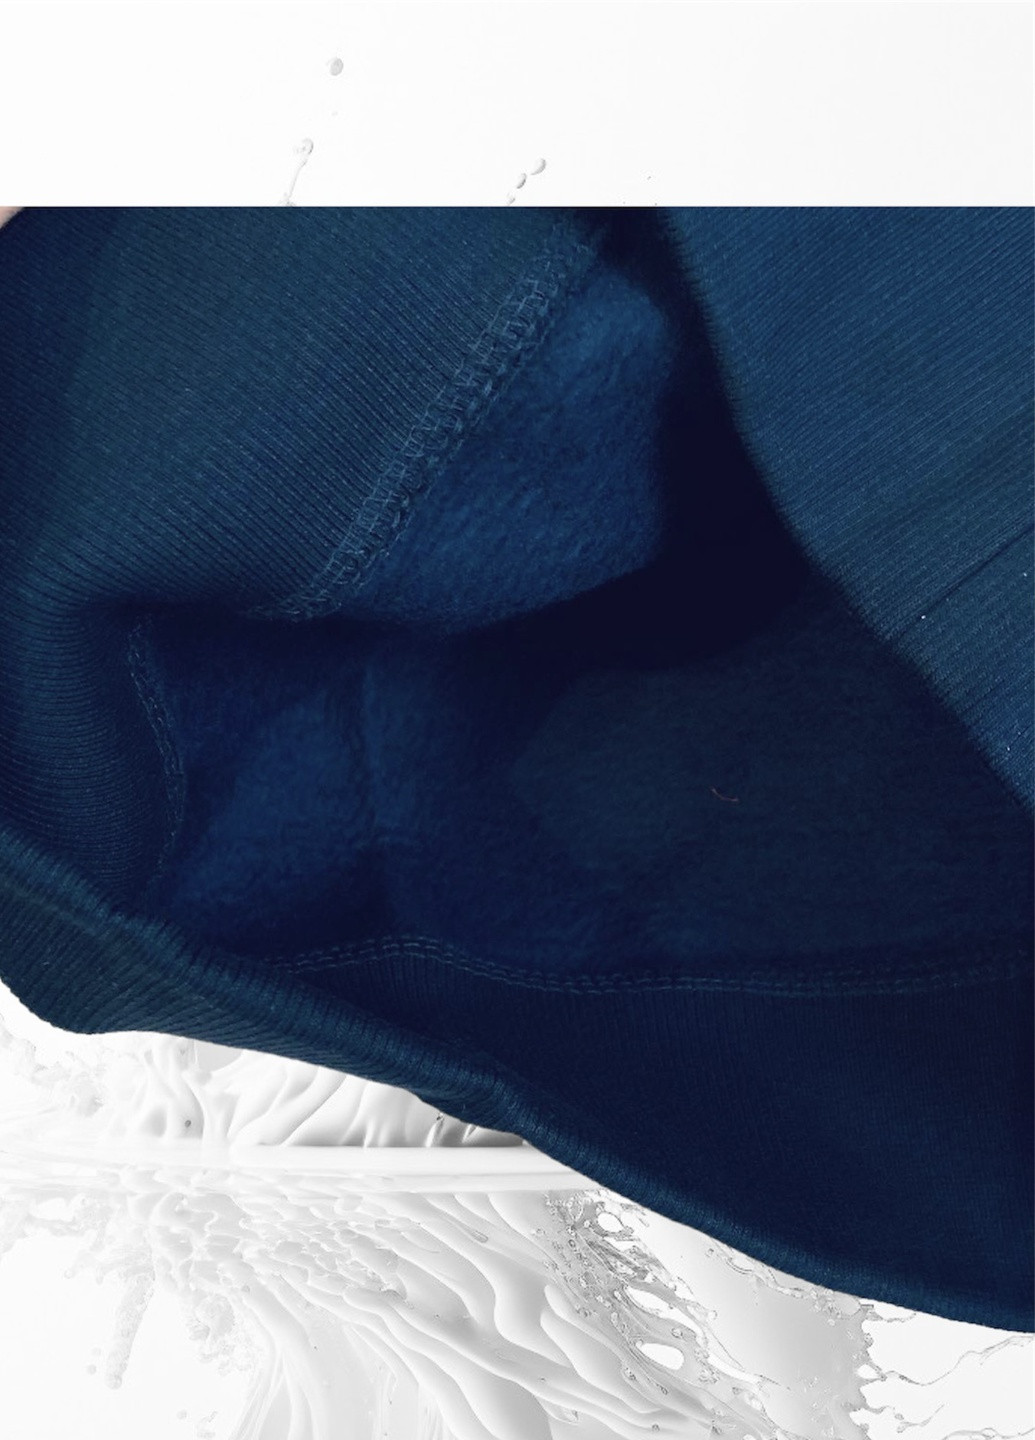 Tommy Hilfiger світшот темно-синій поліестер, трикотаж, фліс